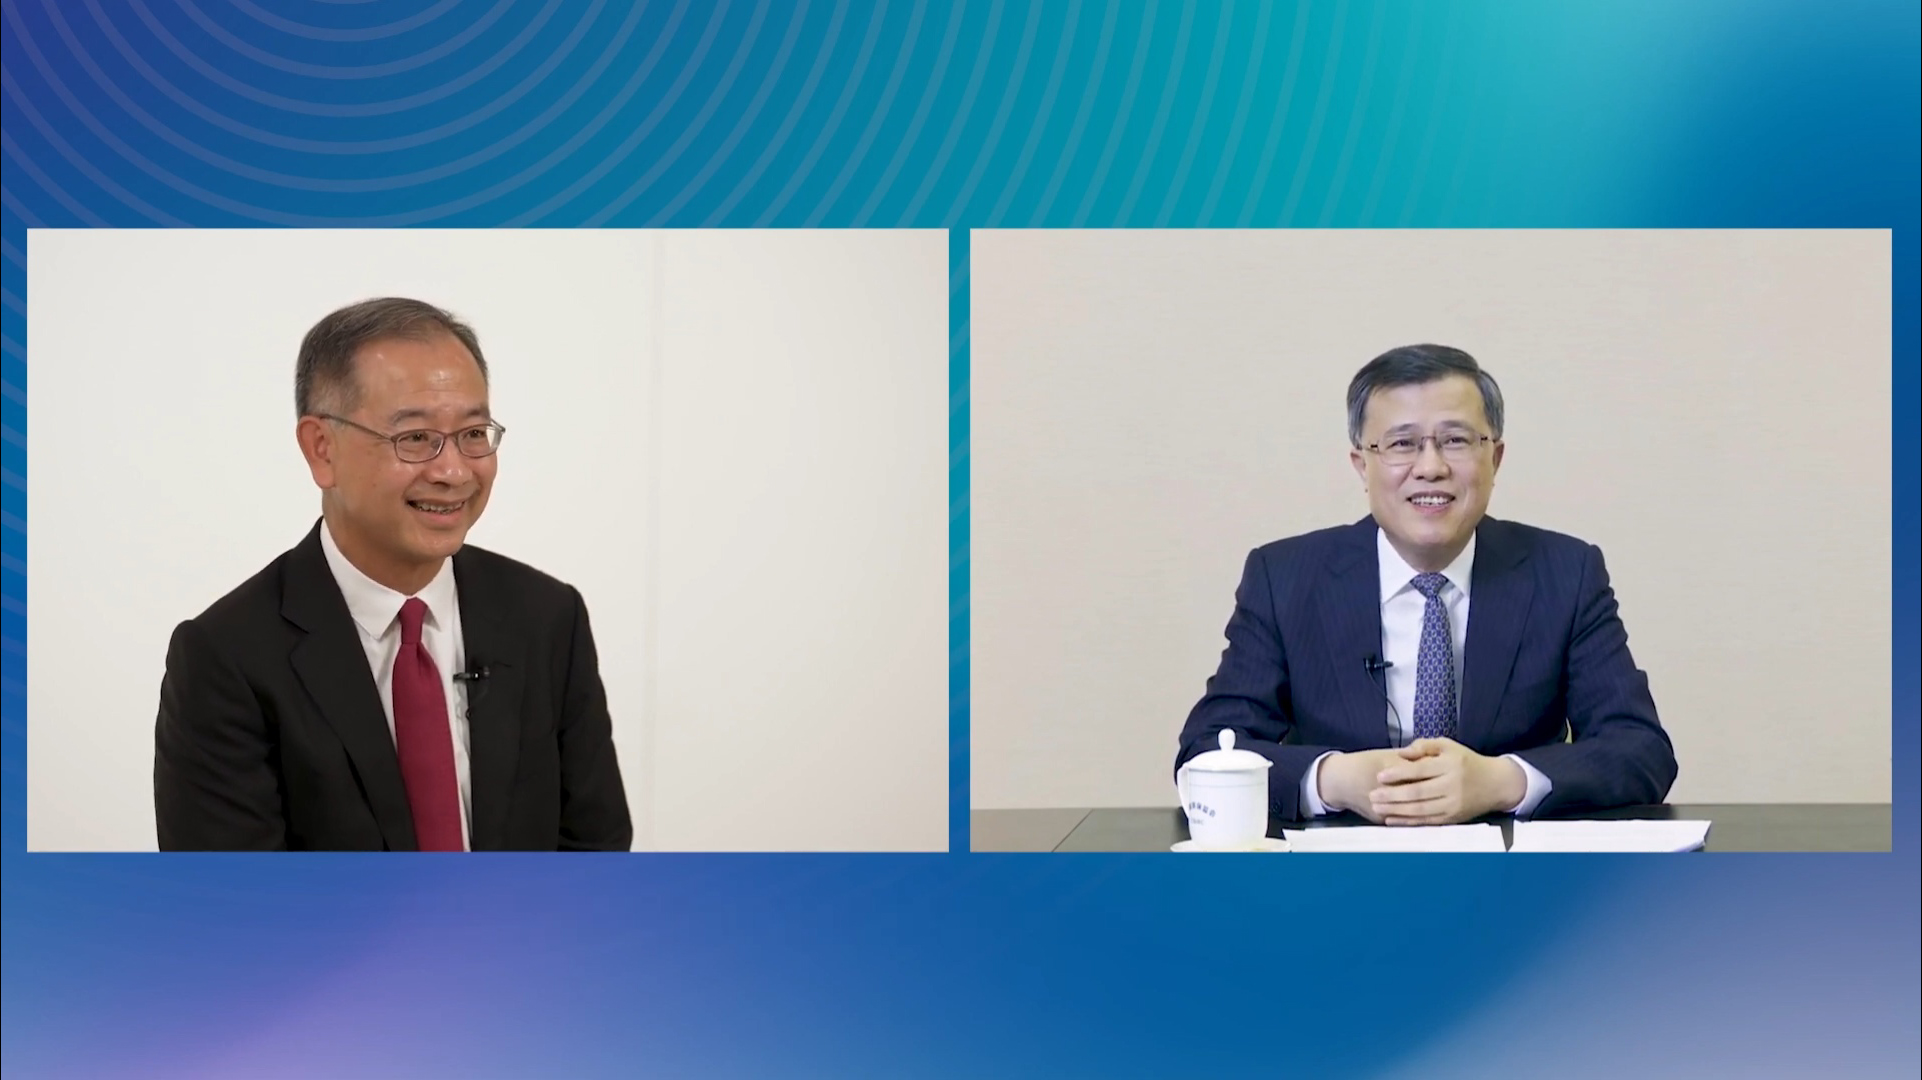 (左至右) 香港金融管理局总裁余伟文; 中国银保监会副主席肖远企